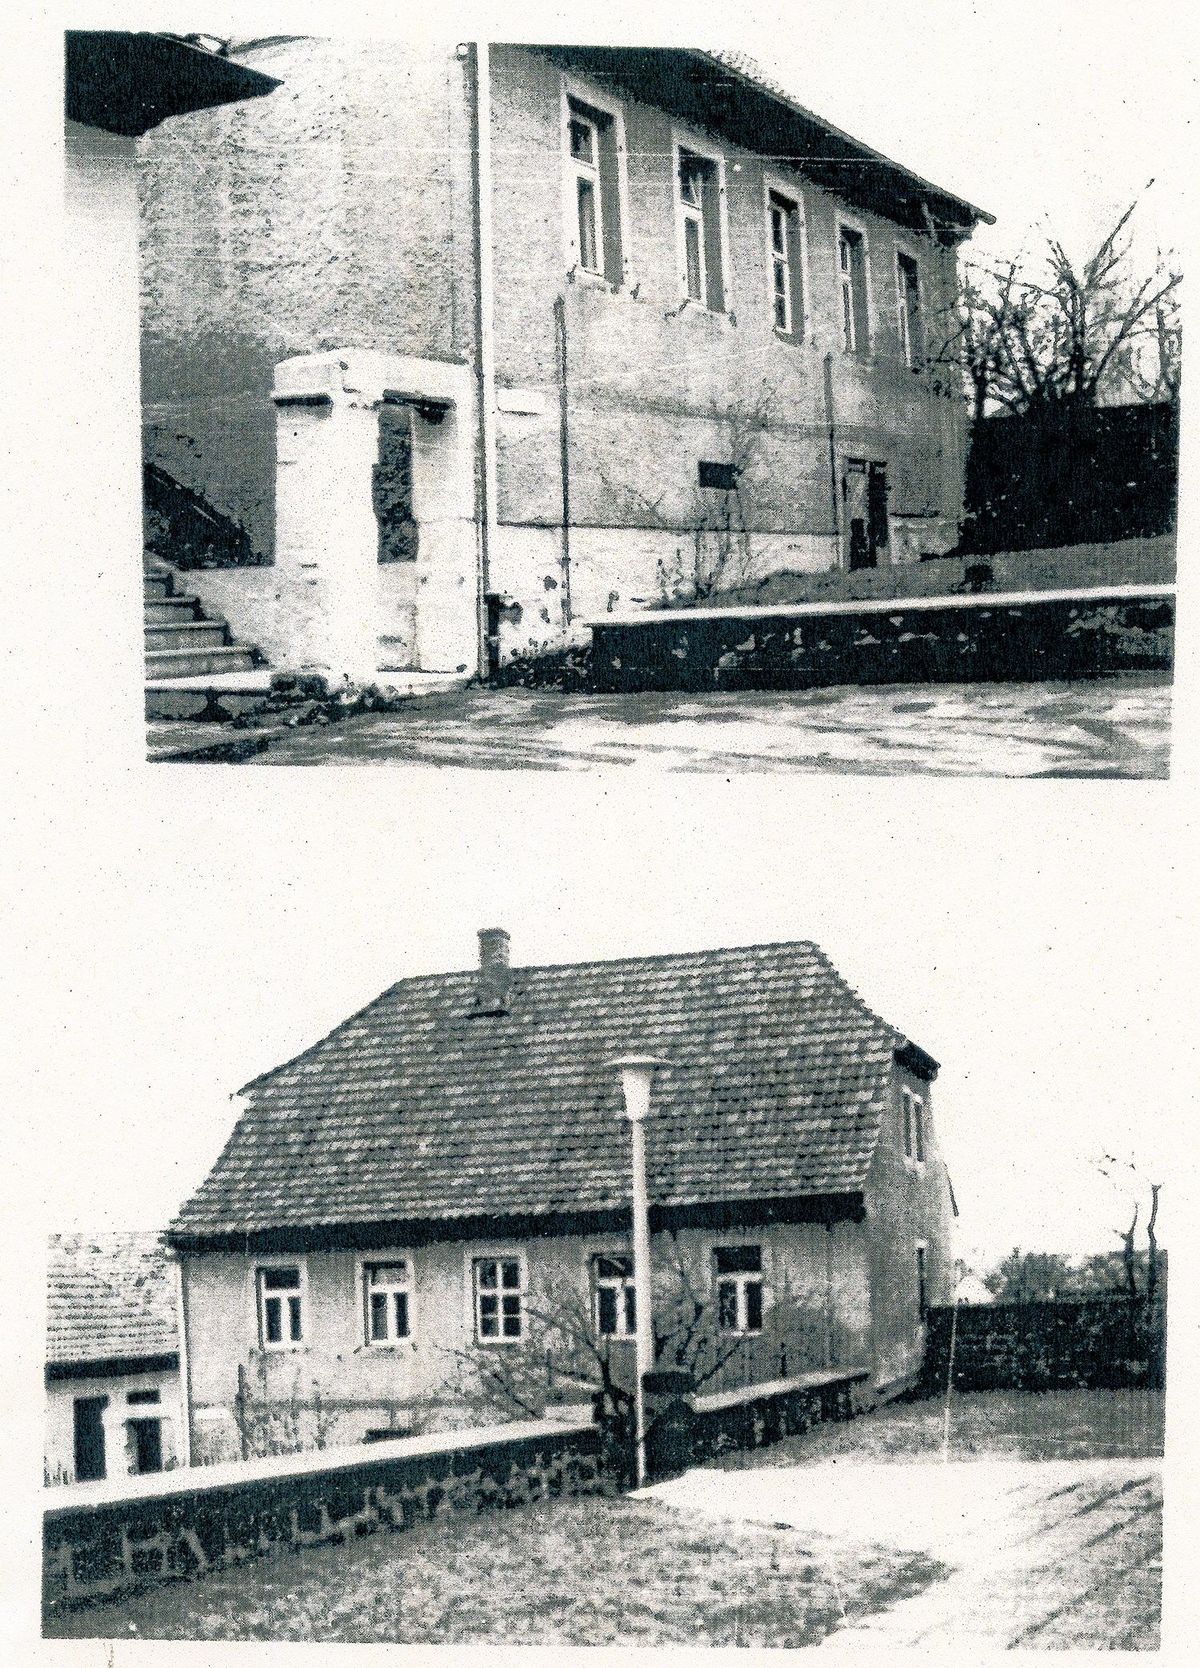 Zwei auf eine Seite geklebte Schwarzweiß-Fotos. Auf dem oberen Foto ist der Hauseingang mit fünf Fenstern und einerm kleinen Eingangsbogen zu erkennen. Das untere Bild zeigt das Haus aus etwa 20 Metern Entfernung. 